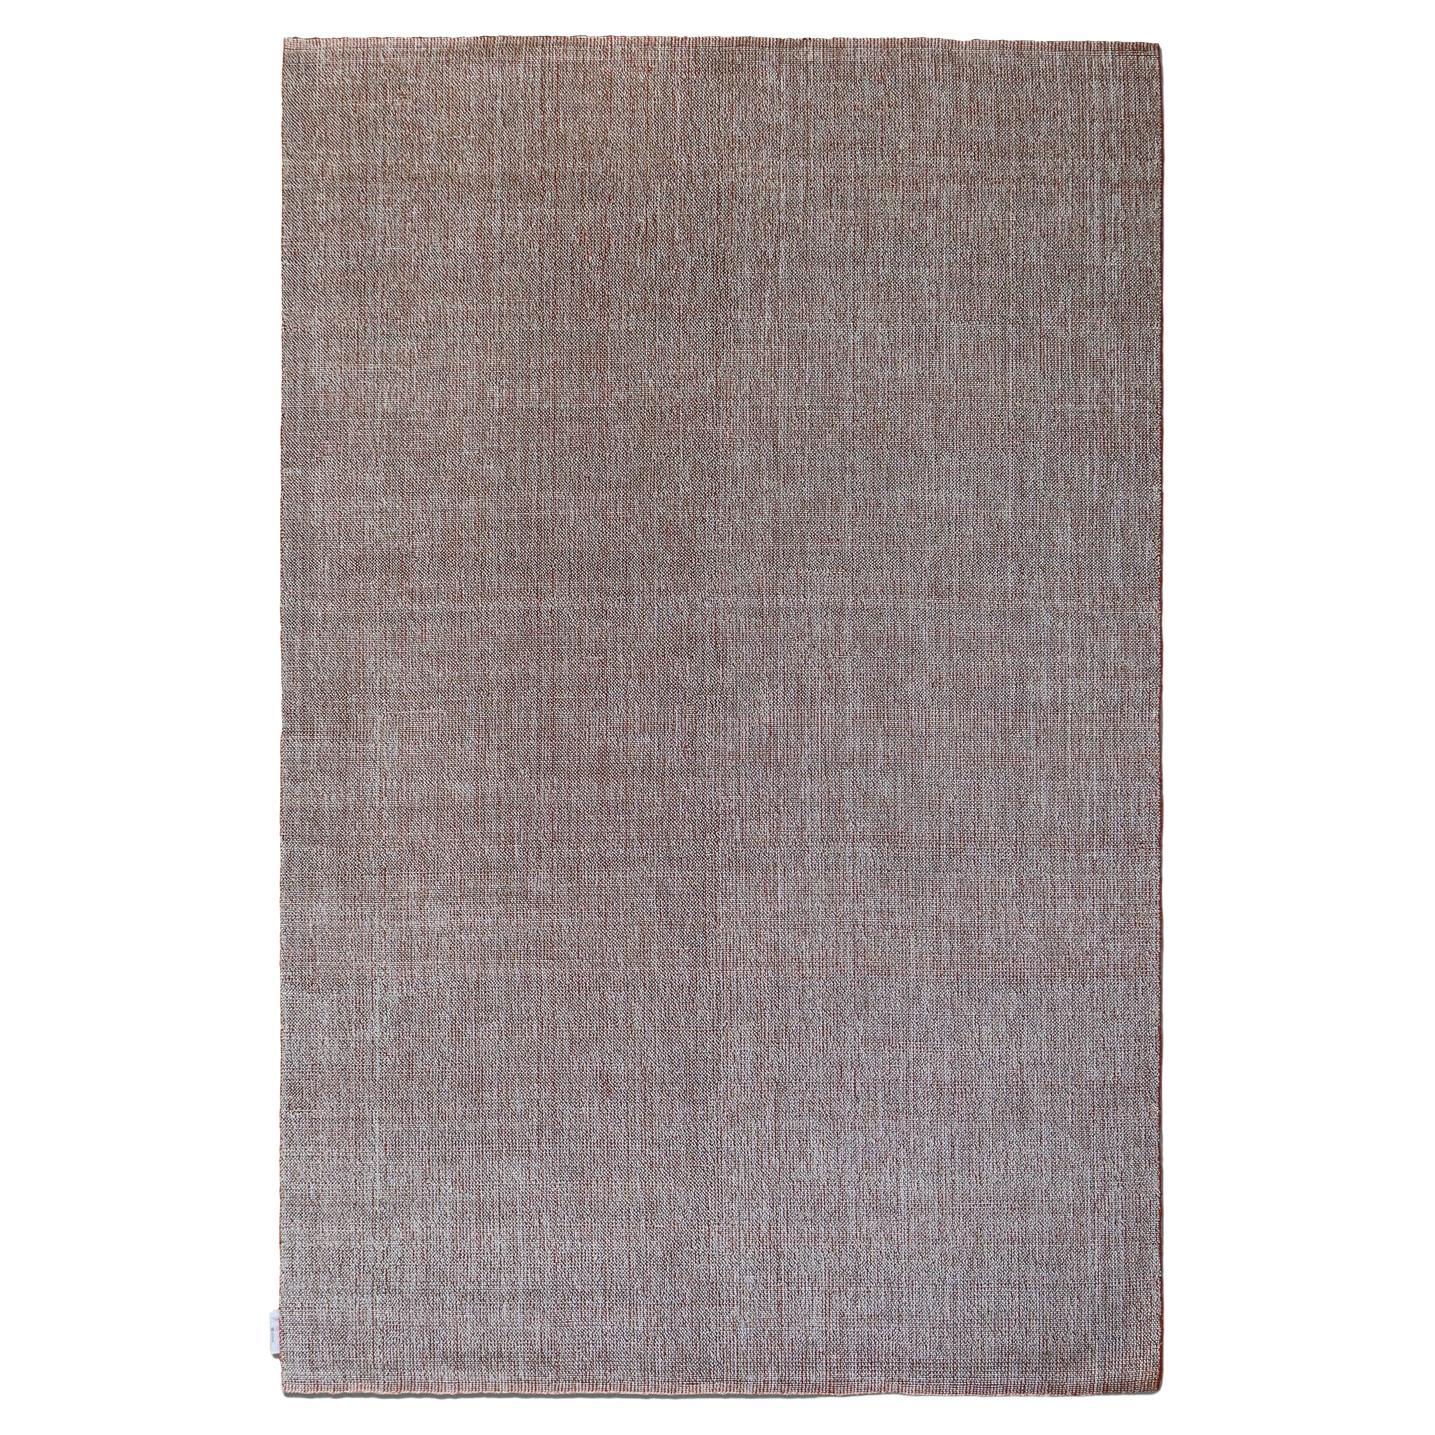 Tapis gris orangé du 21e siècle par Deanna Comellini 200x300 cm